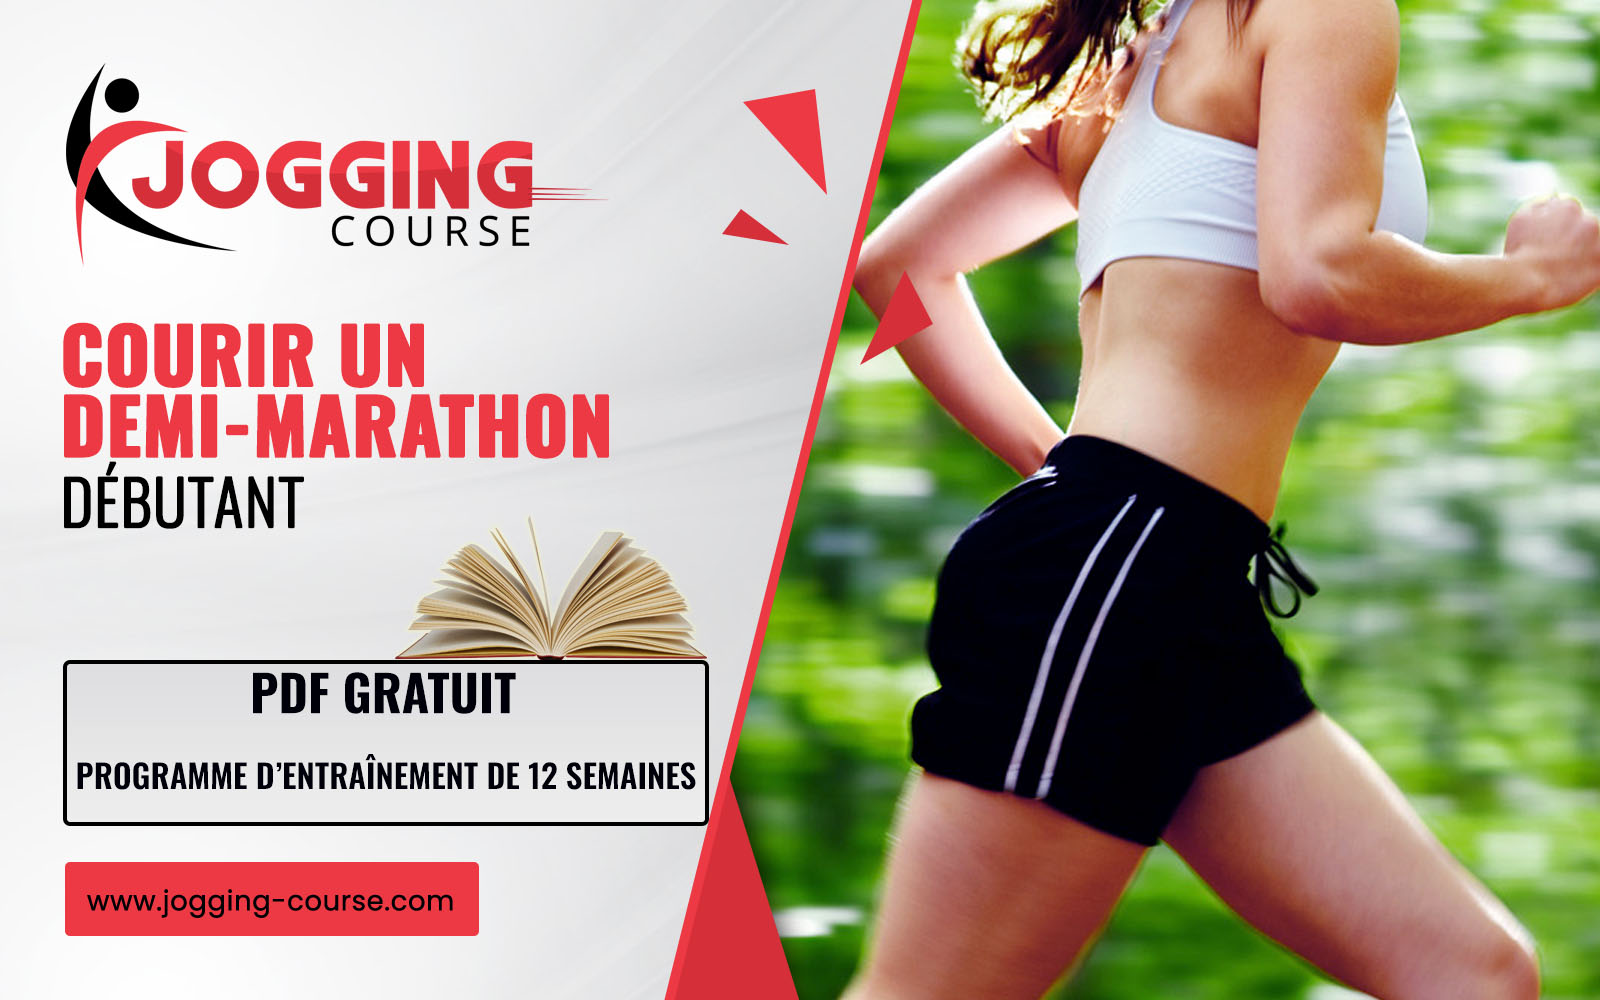 programme de course à pied demi-marathon coureur débutant pdf gratuit Jogging-Course